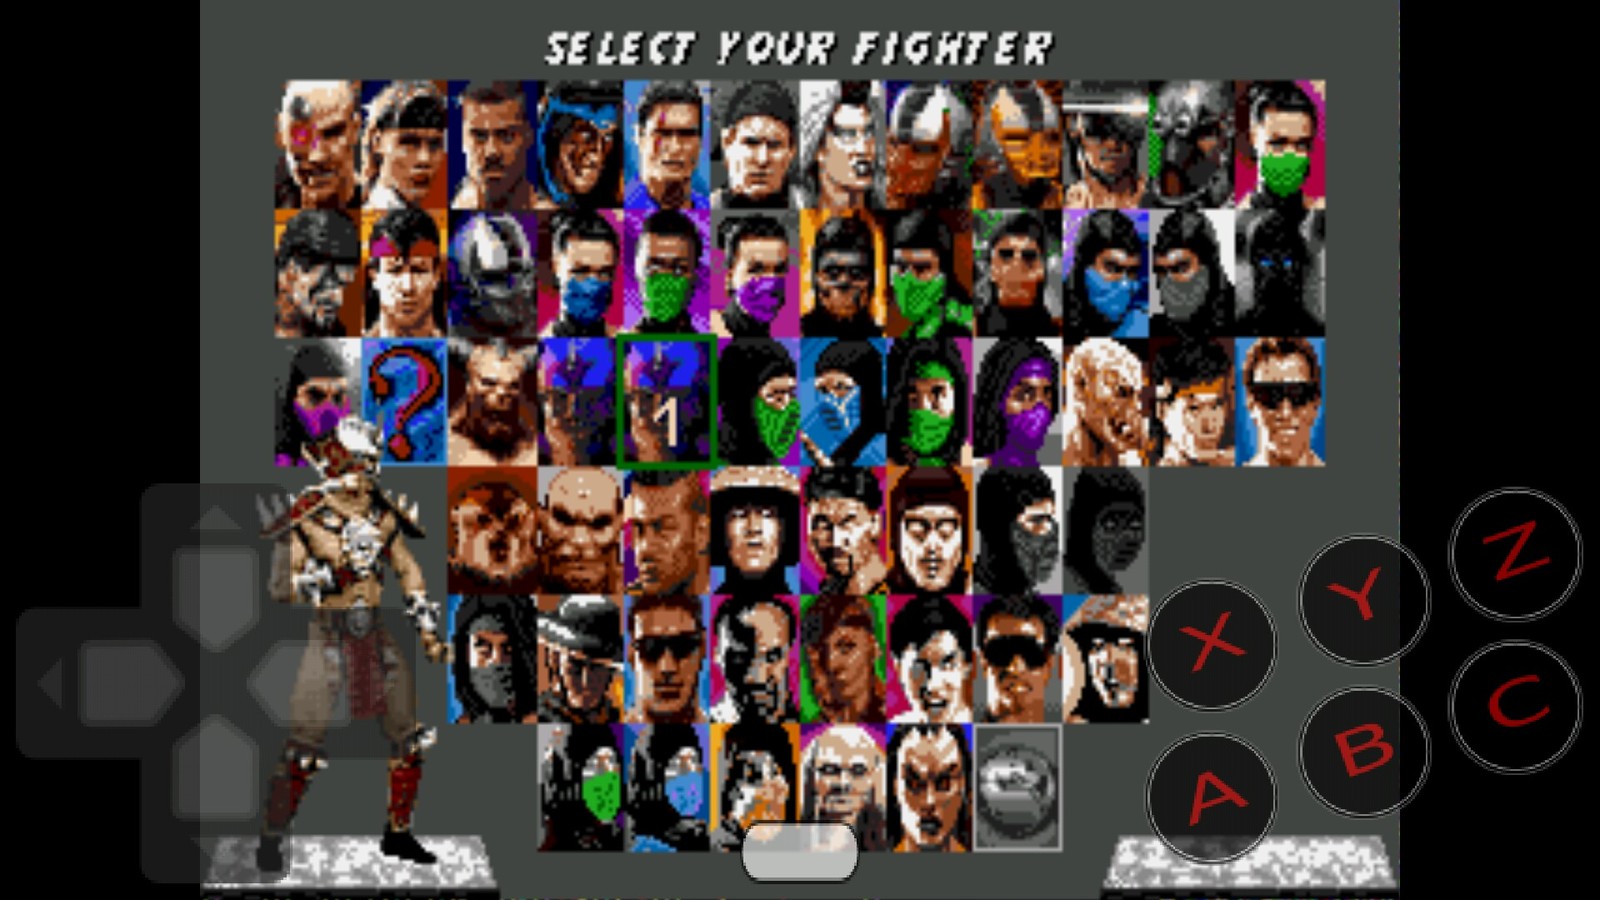 Игра сега мортал комбат 3. Mortal Kombat Trilogy Sega персонажи. Ultimate Mortal Kombat 3. Mortal Kombat Trilogy бойцы. Мортал комбат 3 ультиматум сега.